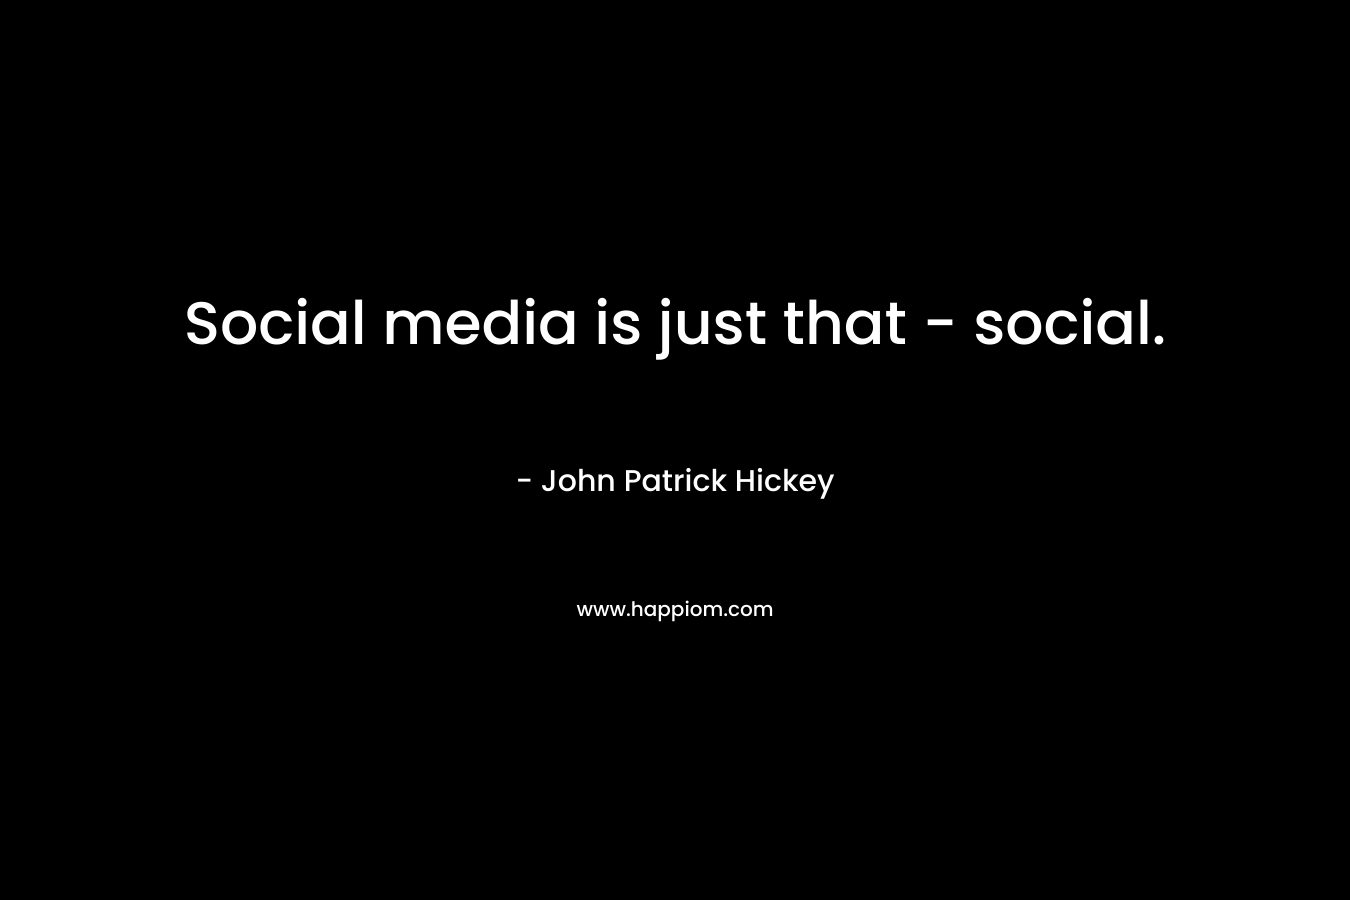 Social media is just that - social.